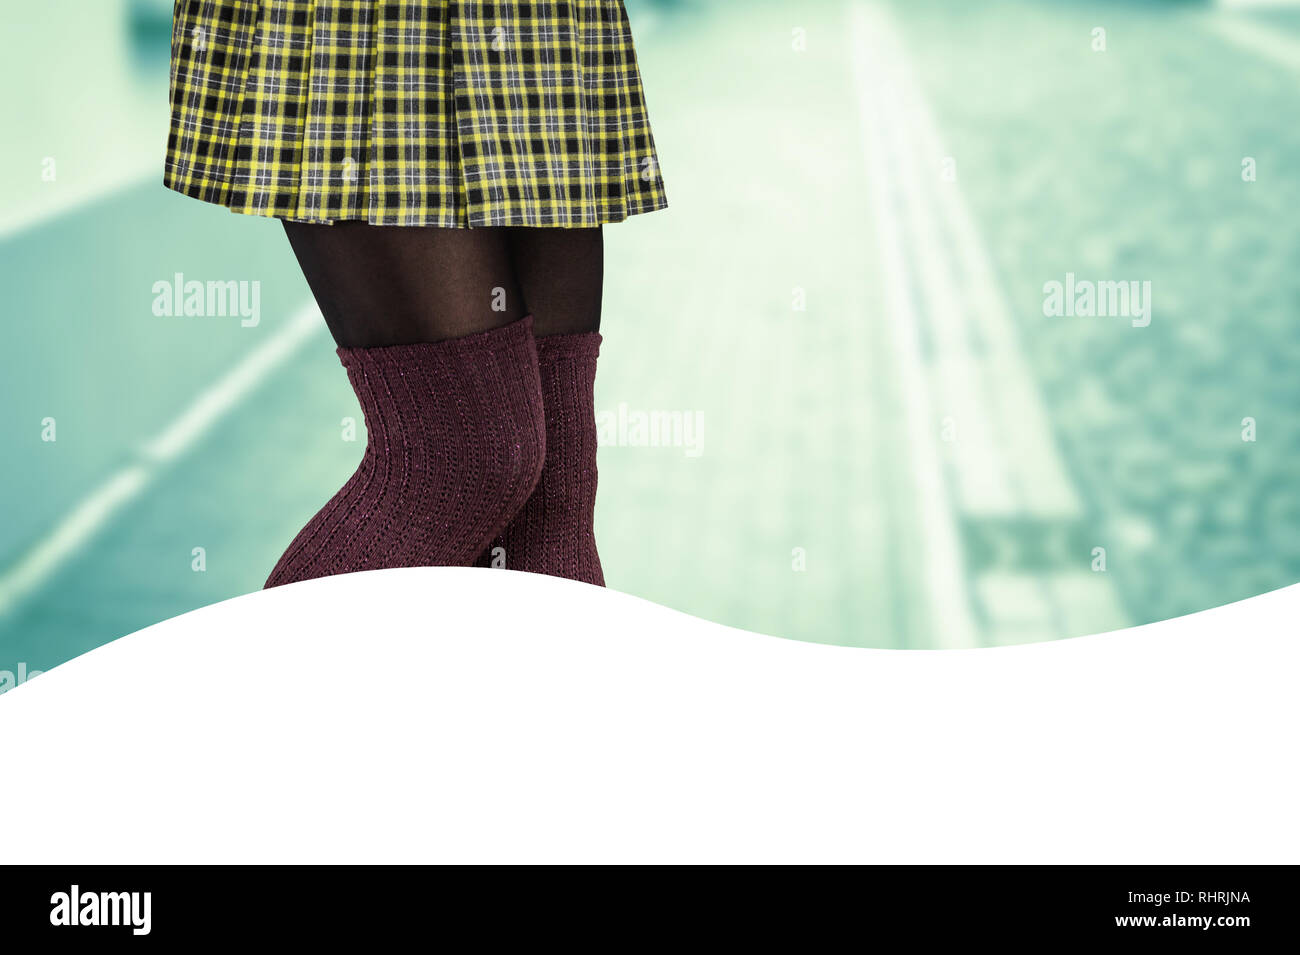 Femme avec des belles jambes portant des mini jupe et chaussettes hautes Banque D'Images